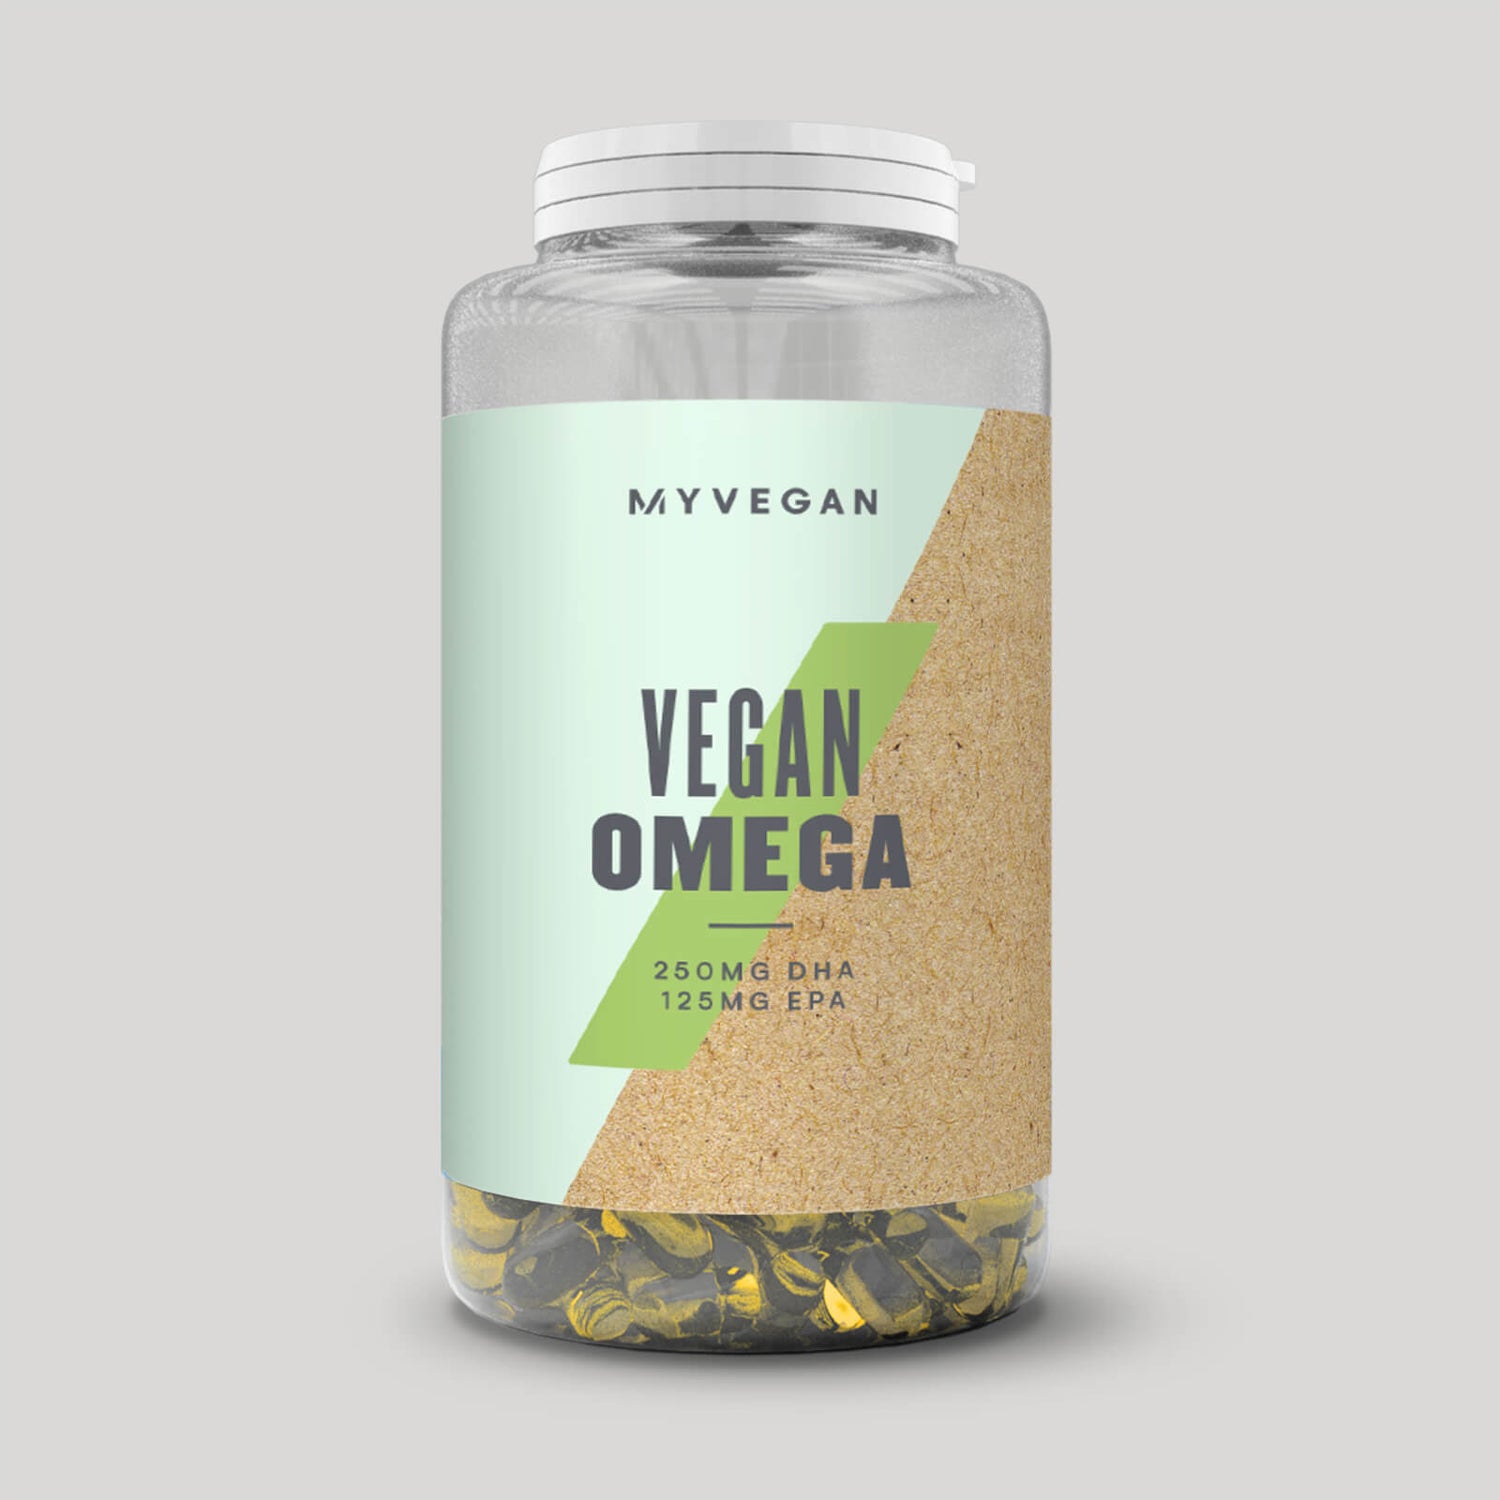 Omega 3 Vegan Supplement